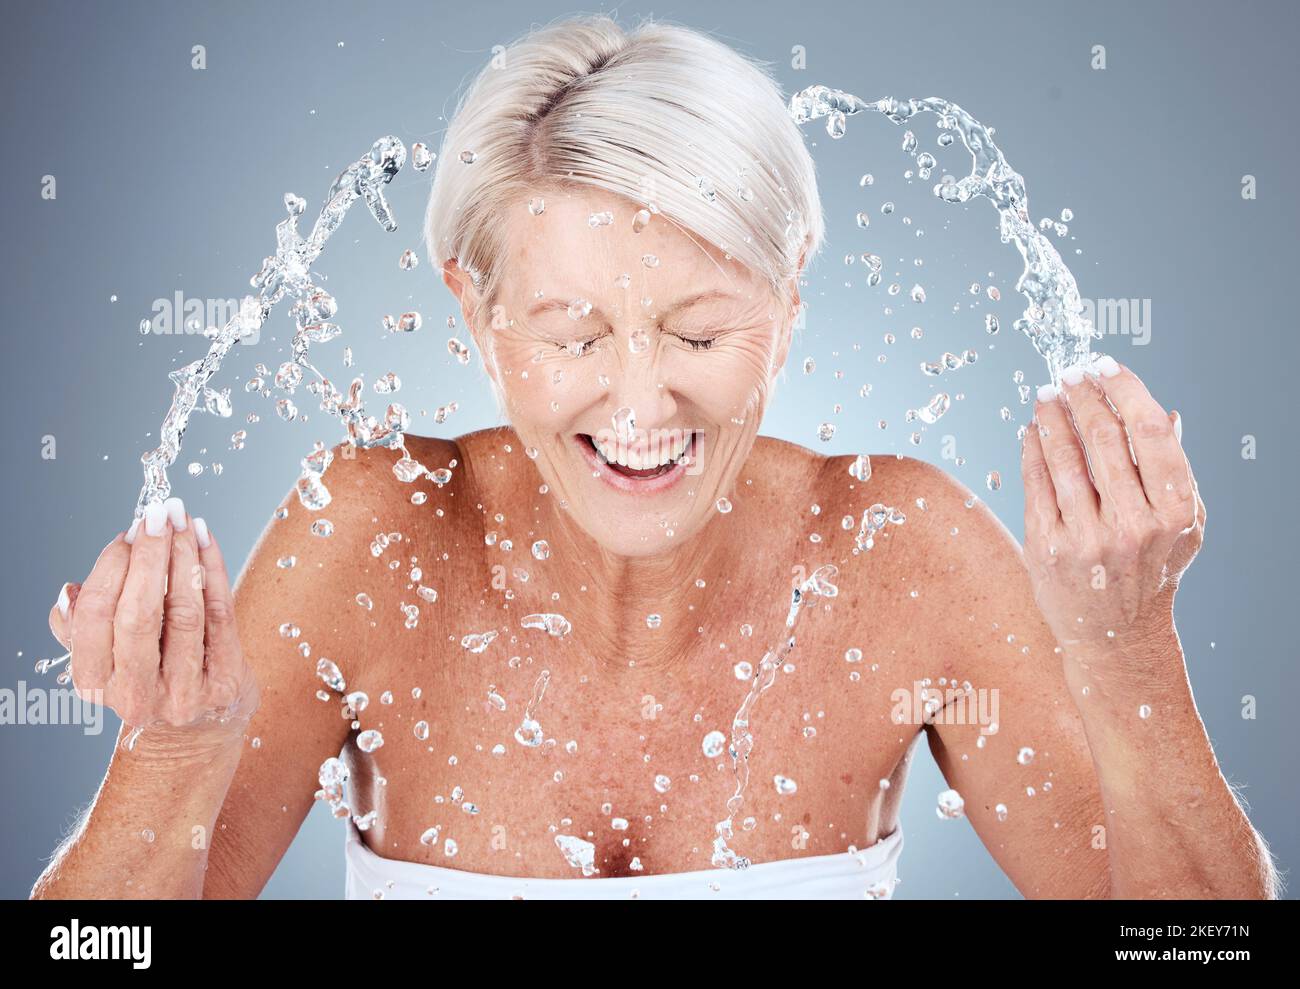 Reife Frau, Wasserspritzer oder Gesichtswaschung in der Hautpflege Routine, morgens Hygiene Wartung oder Gesundheit Wellness. Lächeln, glücklich oder älter Stockfoto